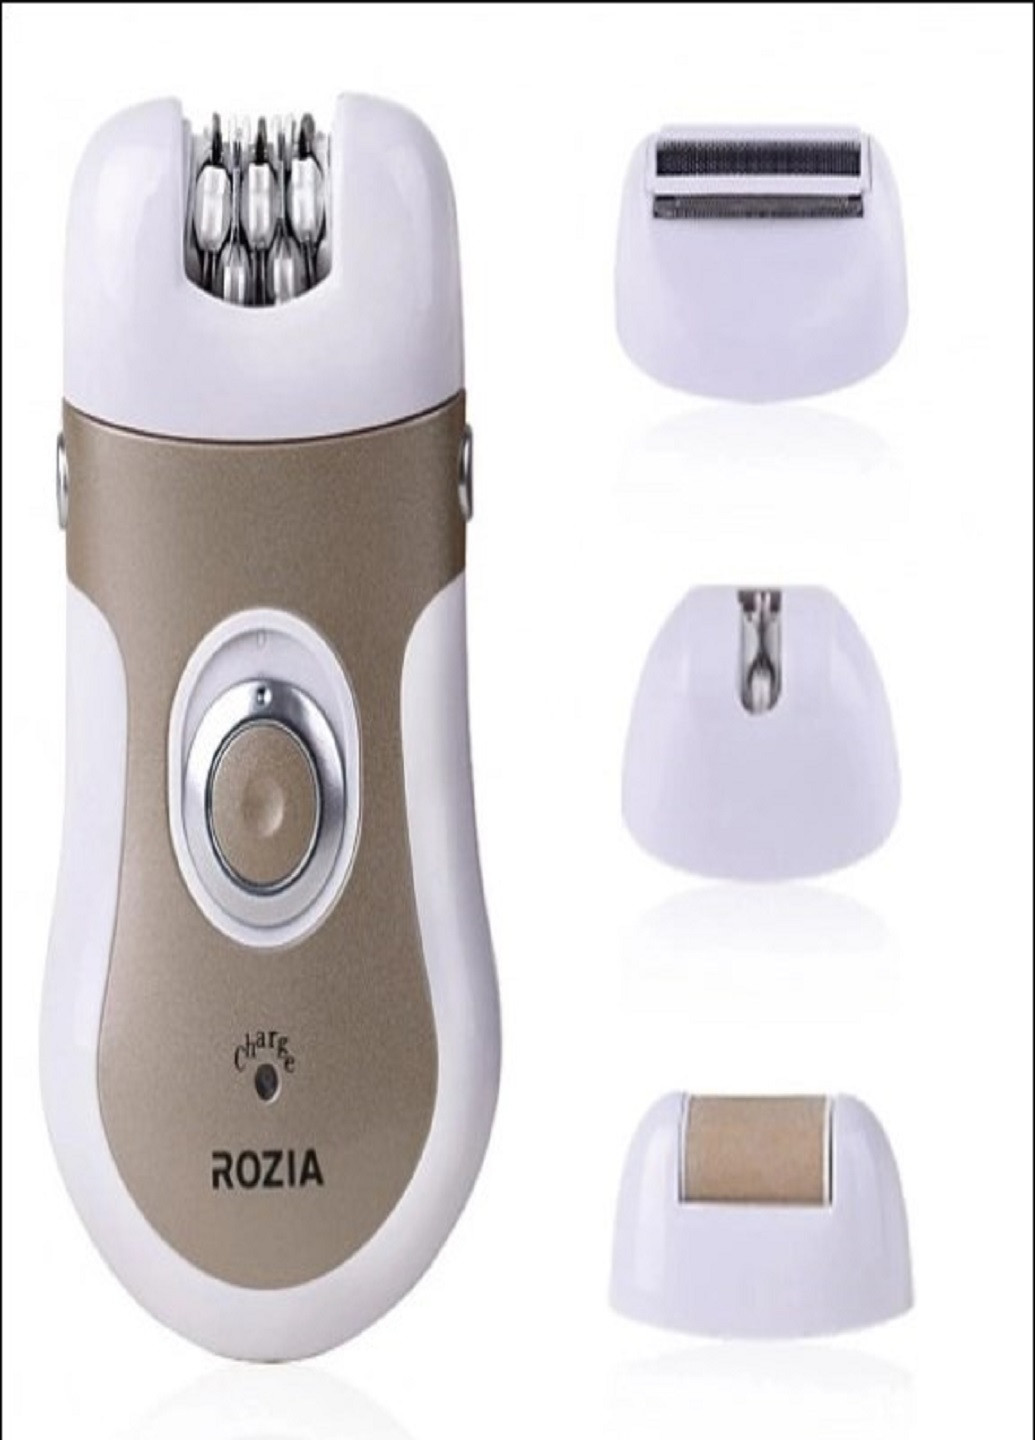 Акумуляторний епілятор Rozia HB-6006 з подвійним лезом для гоління і насадками білий VTech (259906239)